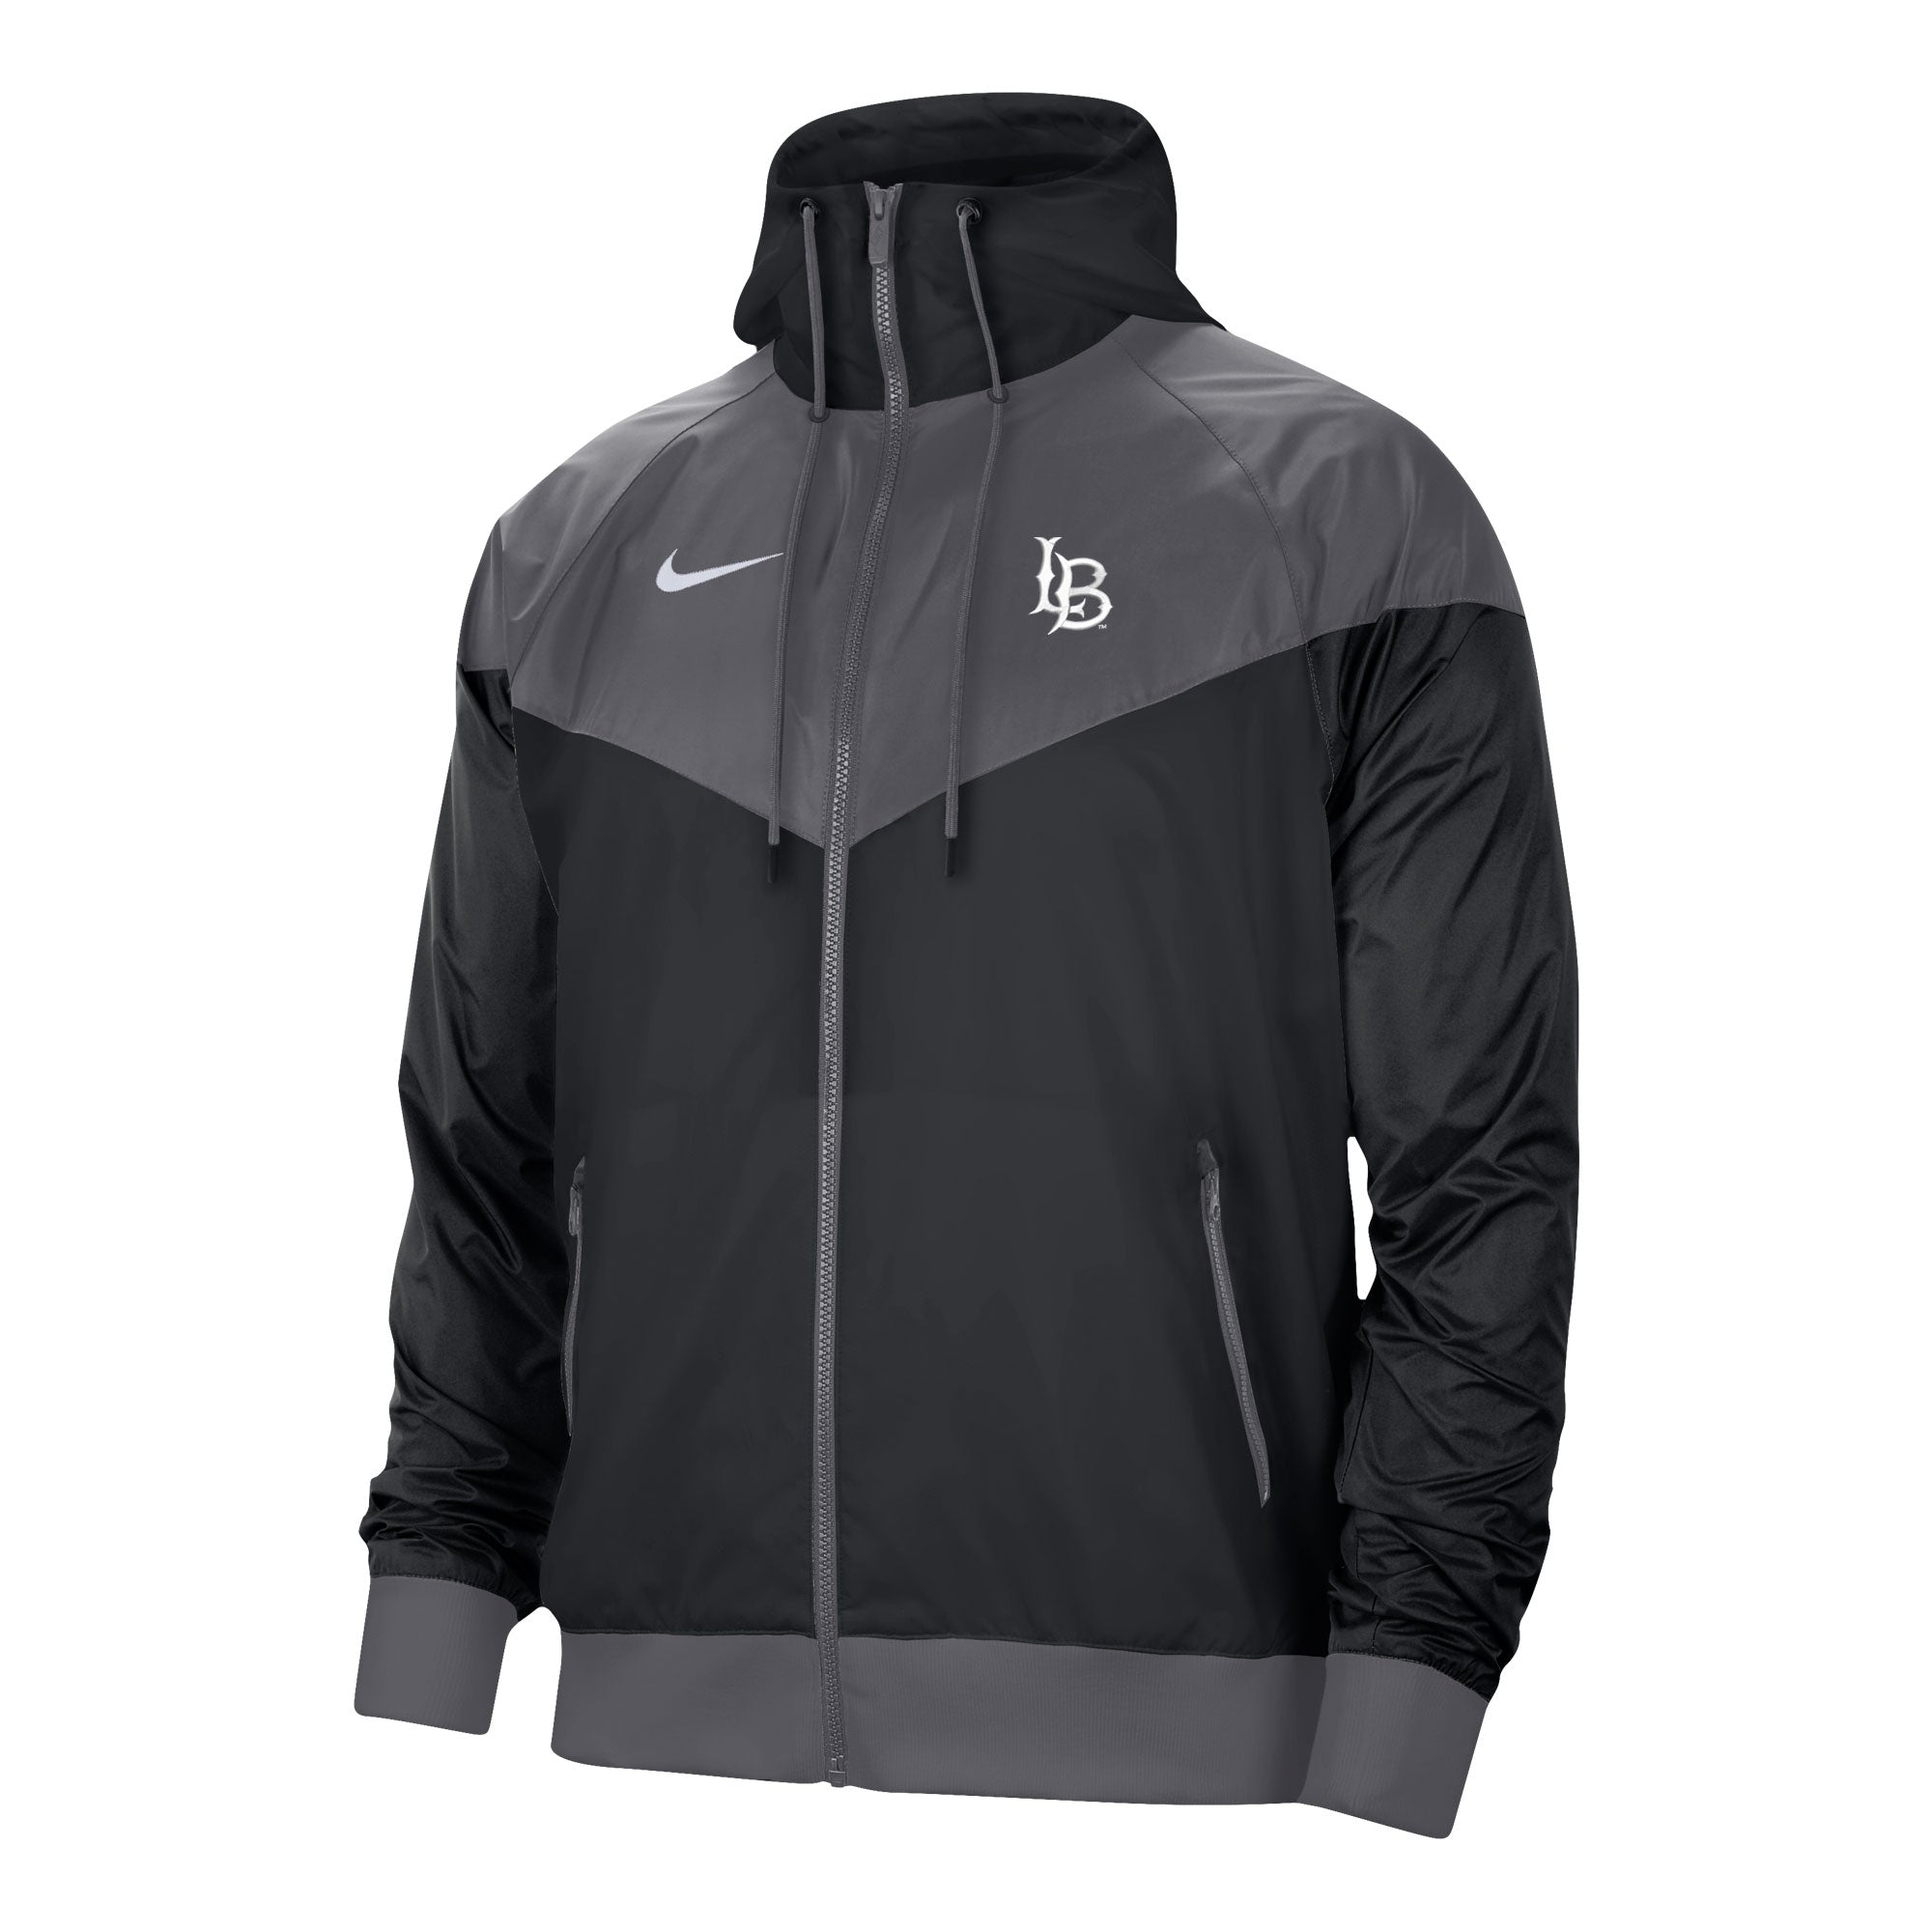 kooi Intimidatie Ik was mijn kleren LB Wind Runner Jacket - Black, Nike – Long Beach State Official Store